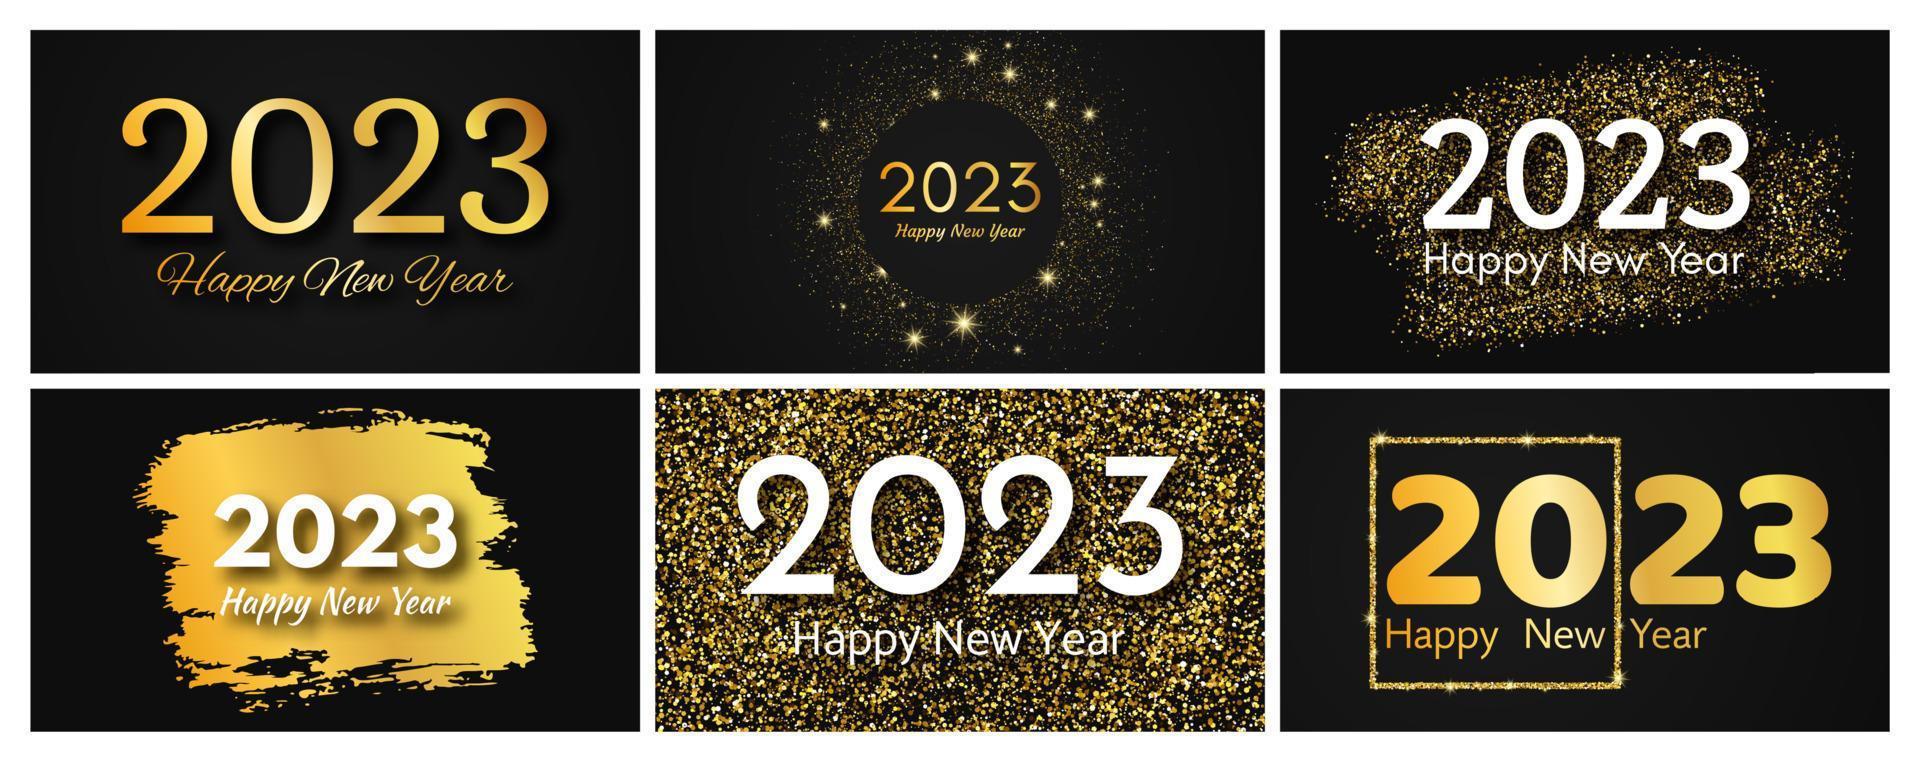 2023 feliz ano novo fundo dourado. conjunto de cenários abstratos de ouro com uma inscrição feliz ano novo no escuro para cartão de saudação de feriado de natal, panfletos ou cartazes. ilustração vetorial vetor